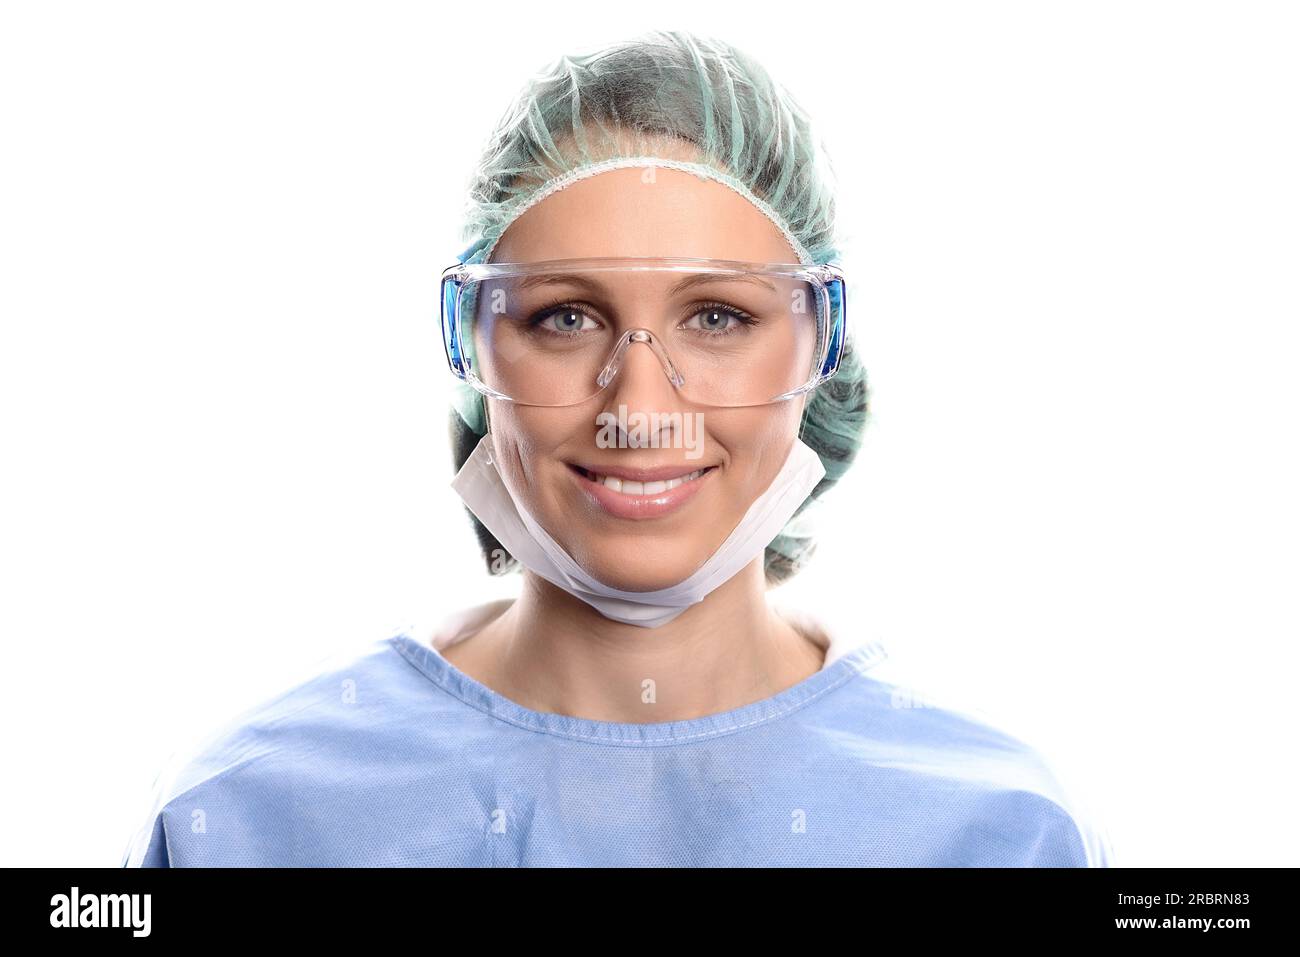 Jeune infirmière ou médecin en gommage chirurgical portant une robe de théâtre, un masque, des lunettes et une casquette regardant directement la caméra, la tête et les épaules Banque D'Images